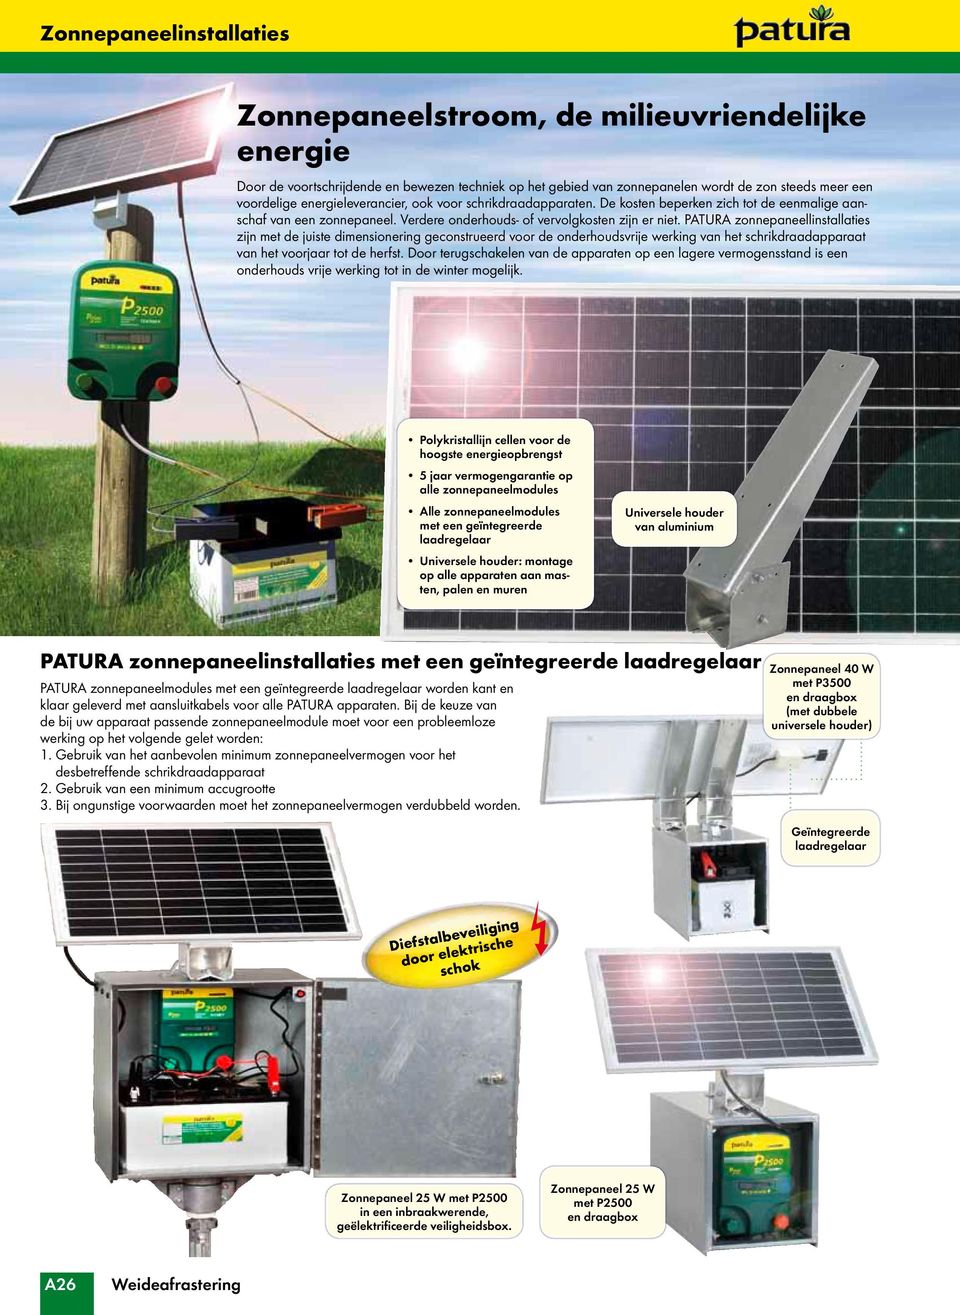 PATURA zonnepaneellinstallaties zijn met de juiste dimensionering geconstrueerd voor de onderhoudsvrije werking van het schrikdraadapparaat van het voorjaar tot de herfst.